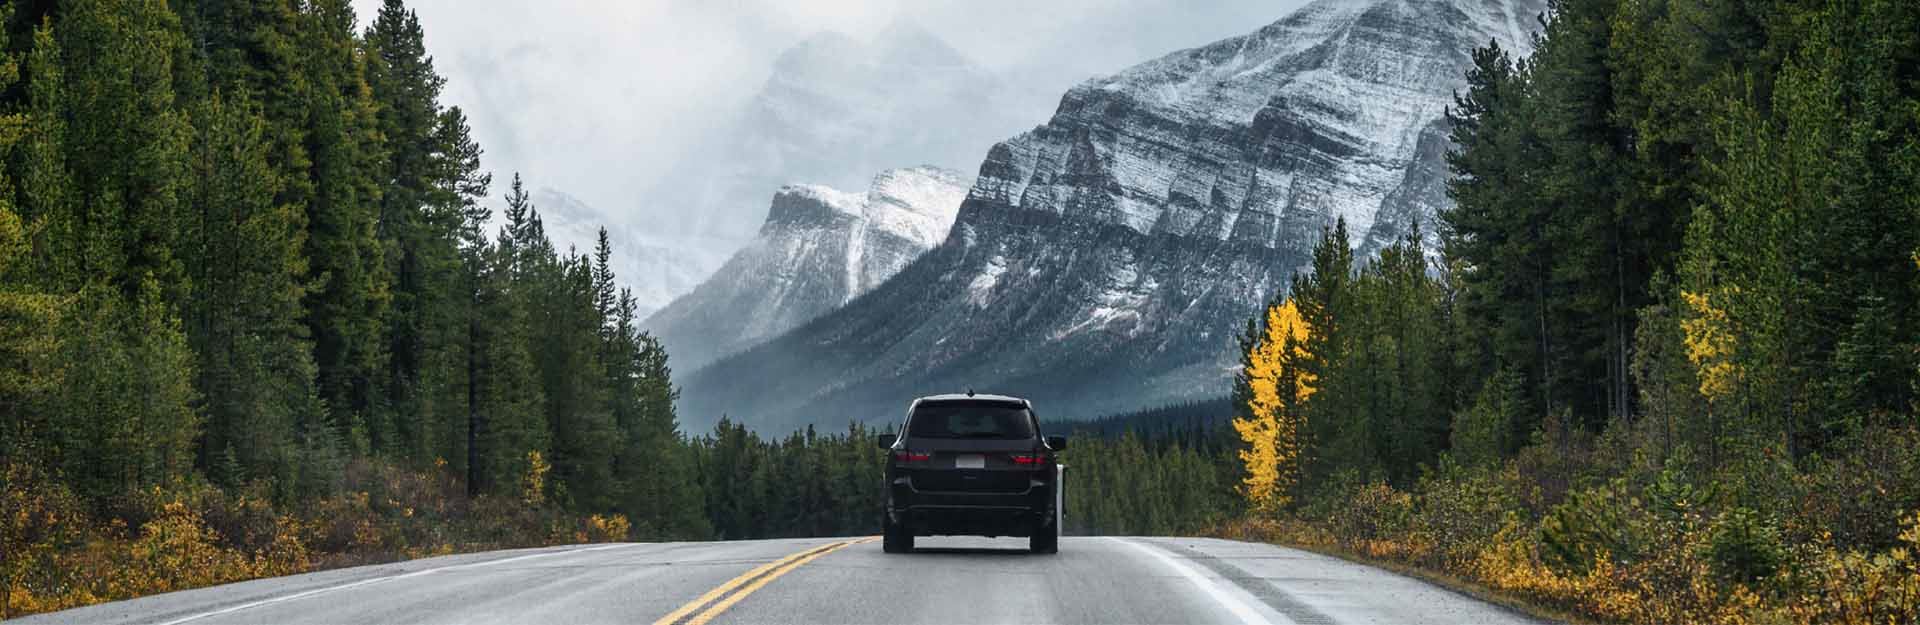 In der Mitte der hintere Teil eines SUV, der auf einer Straße fährt. Das Fahrzeug wird an den Straßenrändern von einer üppigen Vegetation aus hohen, schmalen Bäumen flankiert. Im Hintergrund sind einige Berge zu sehen.